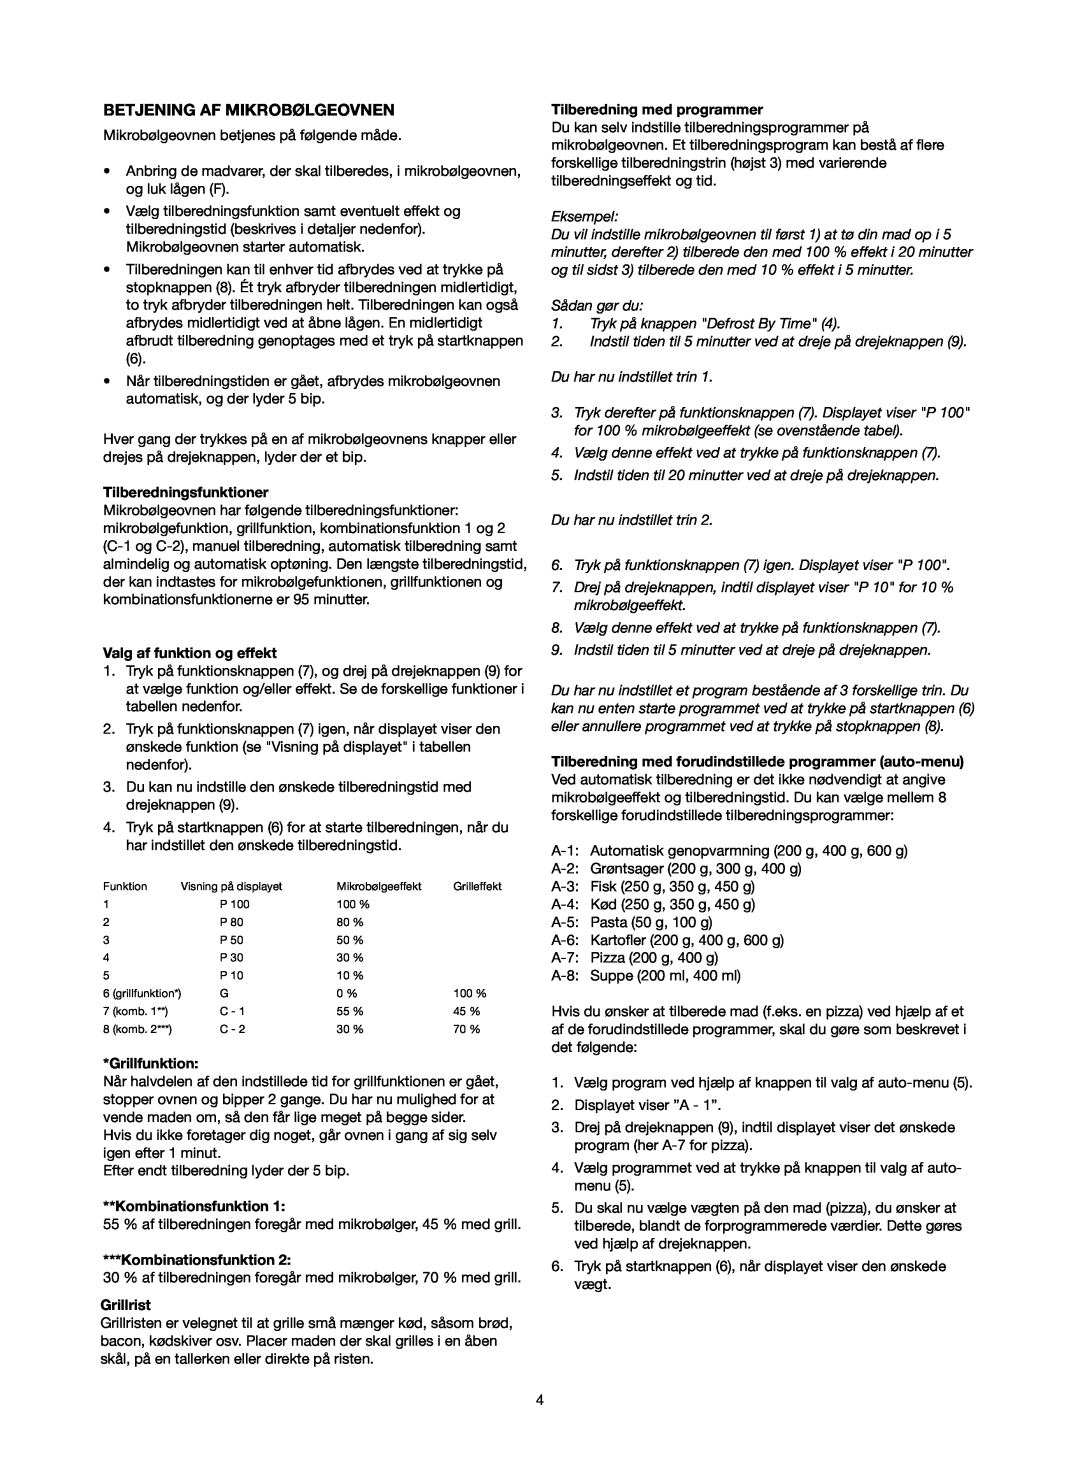 Melissa 753-093 manual Betjening Af Mikrobølgeovnen, Tilberedningsfunktioner, Valg af funktion og effekt, Grillfunktion 